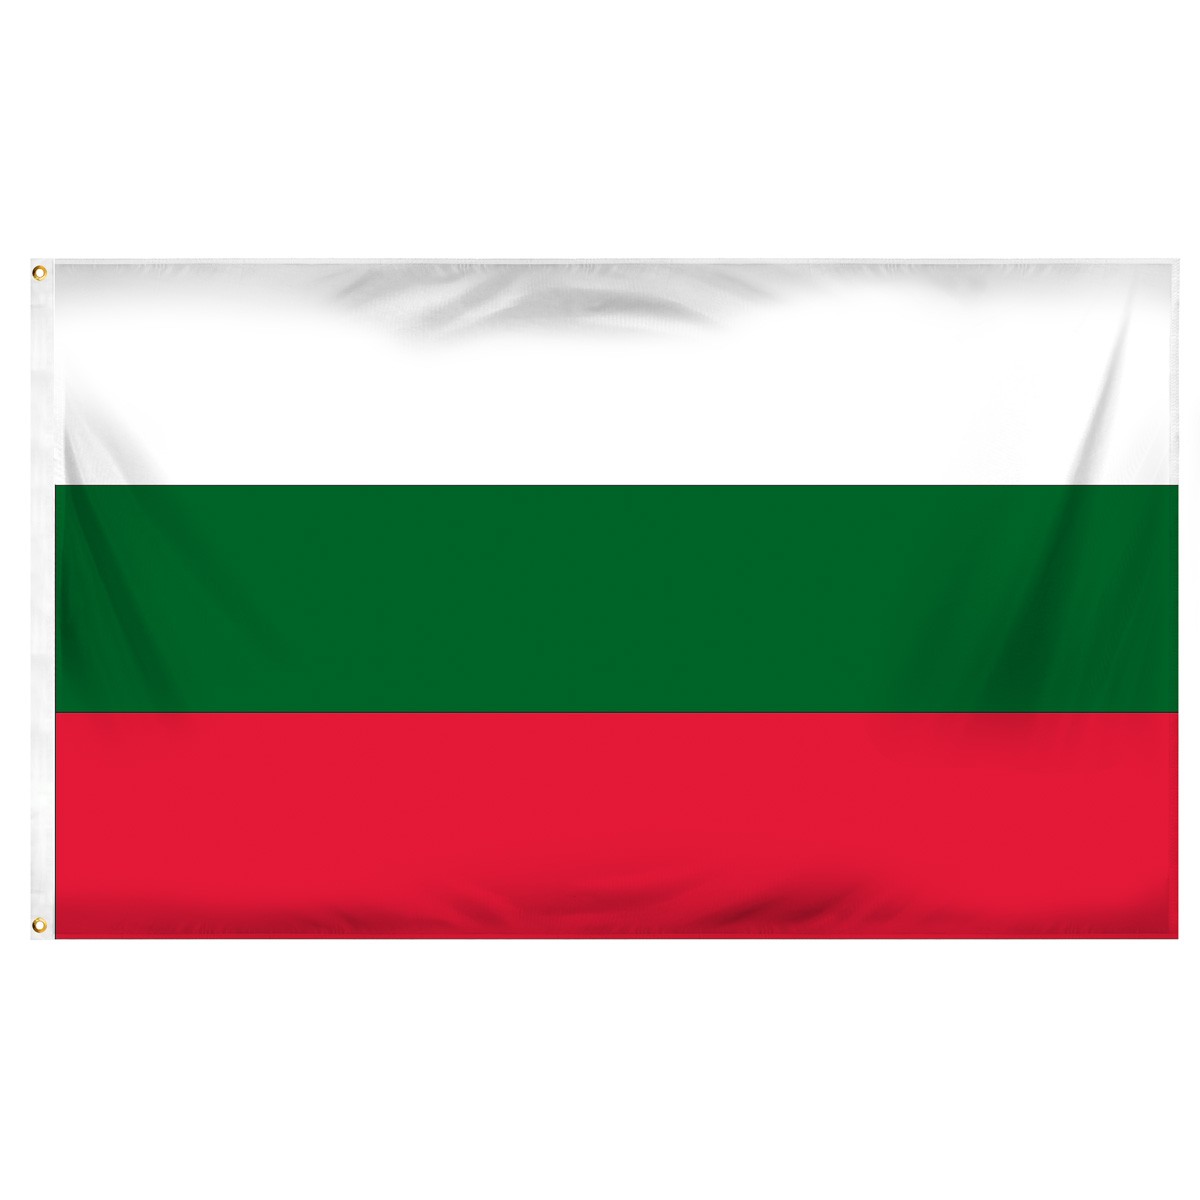 Bulgaria Swallow Pennant Flag